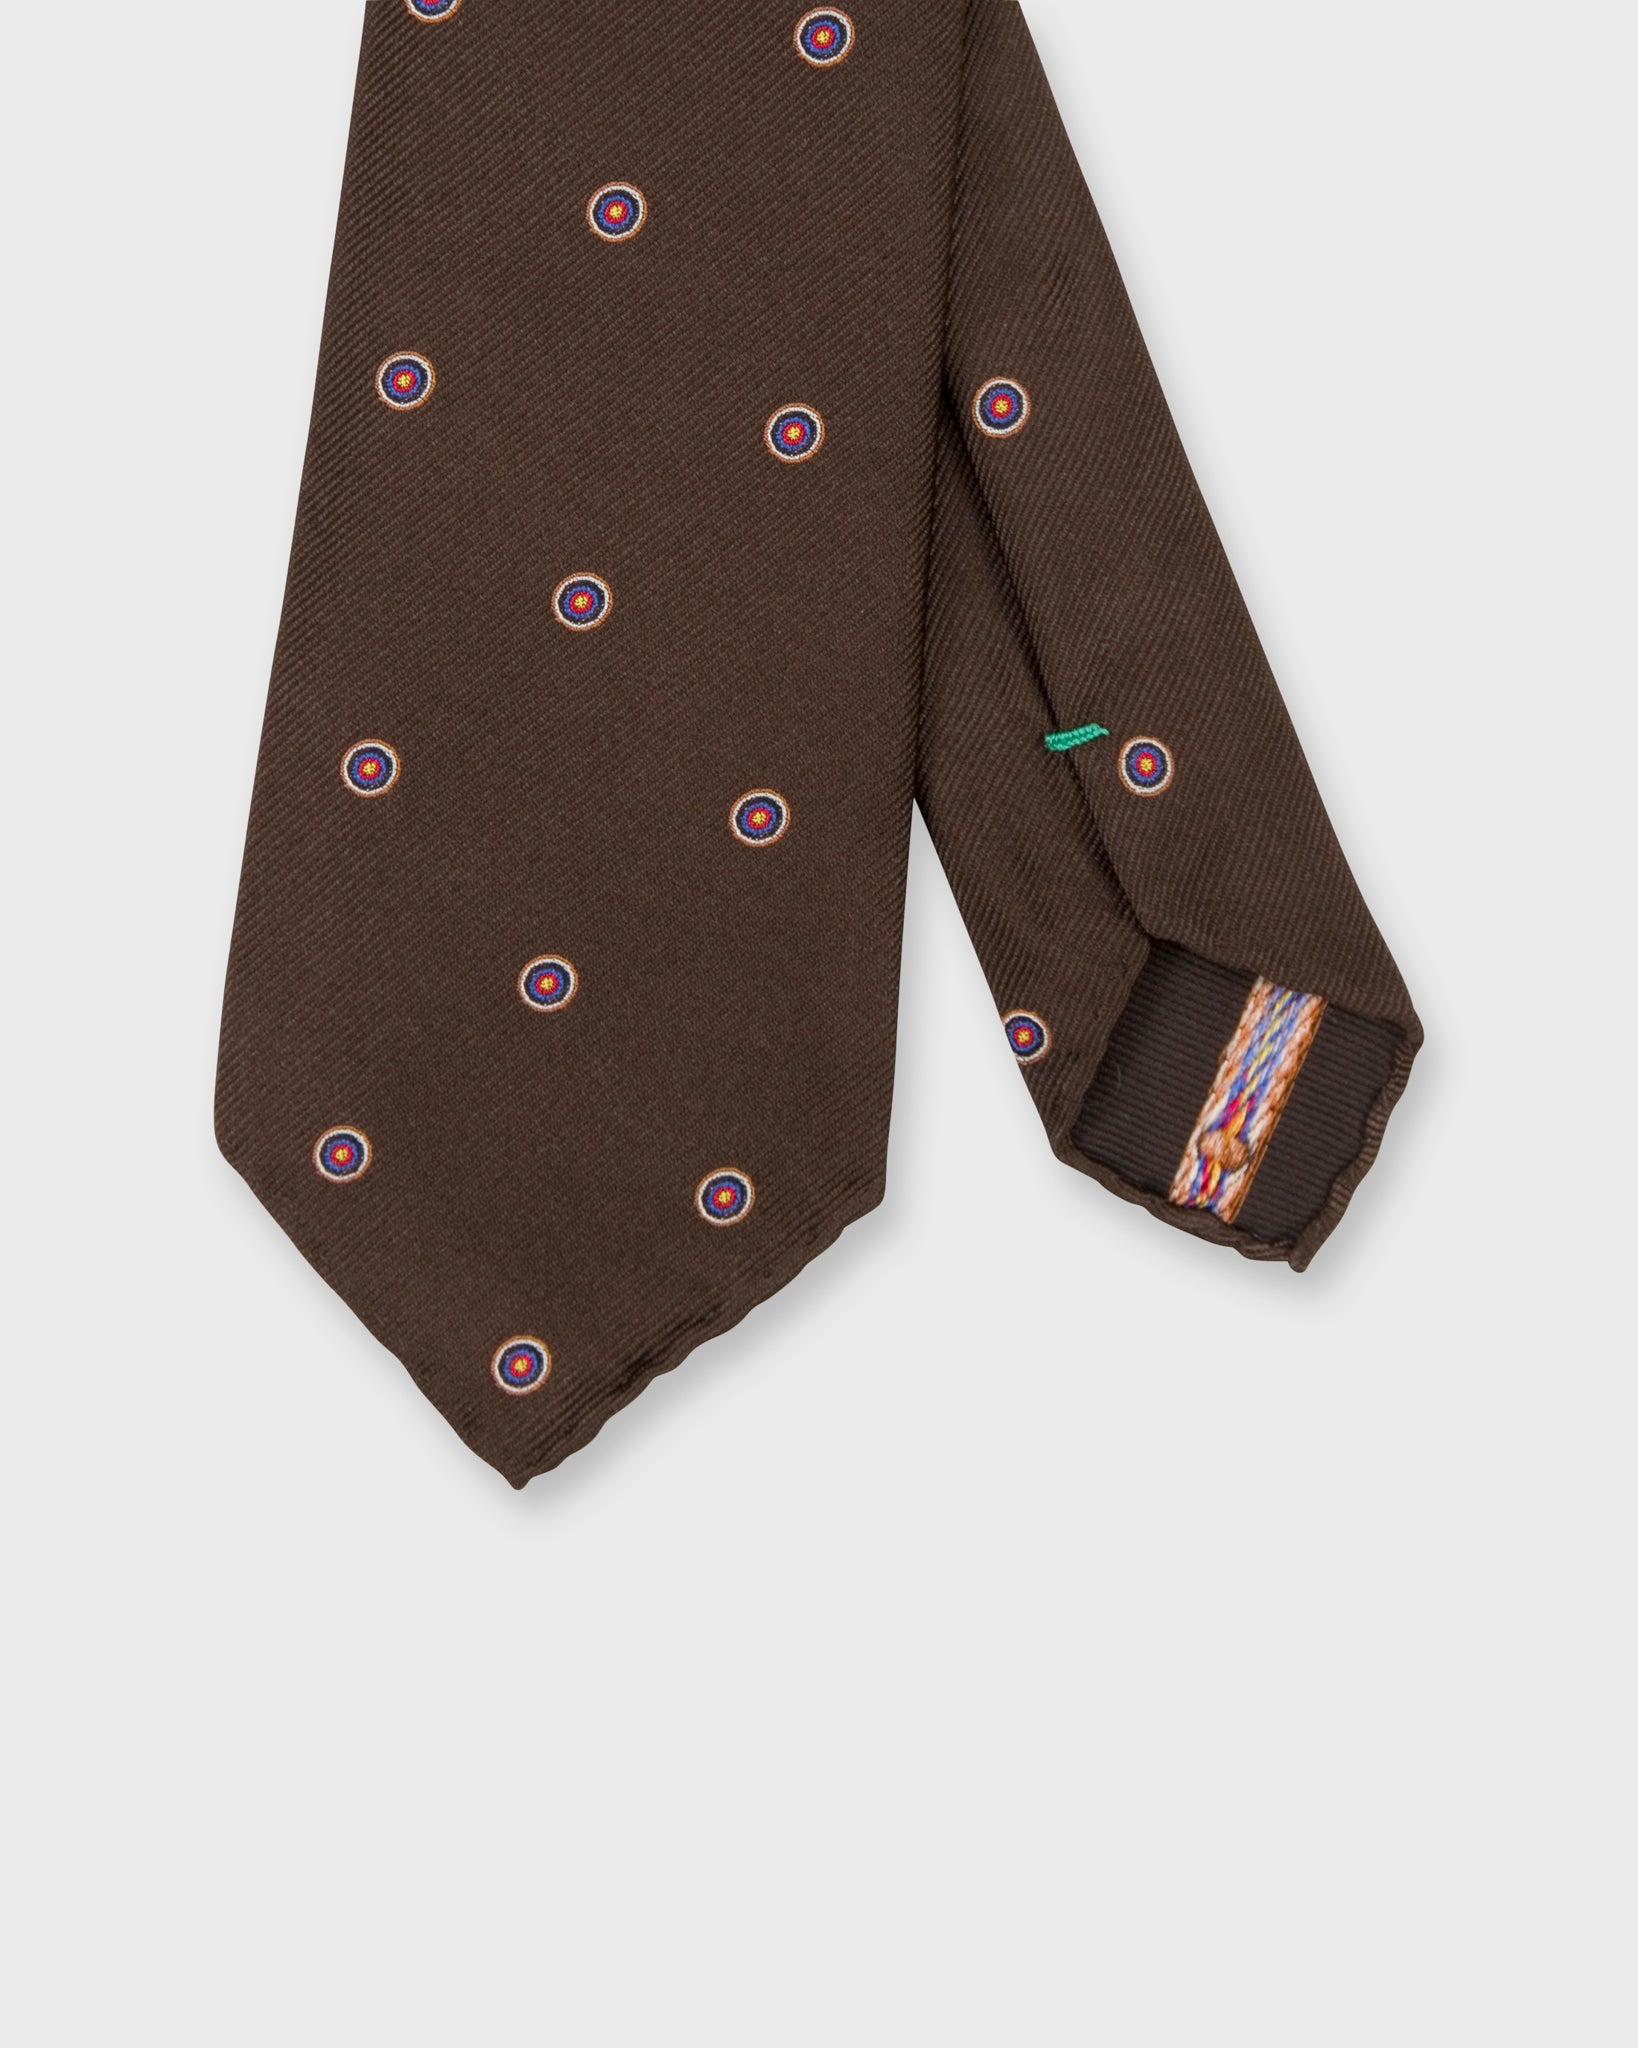 Silk Club Tie in Brown Bullseye